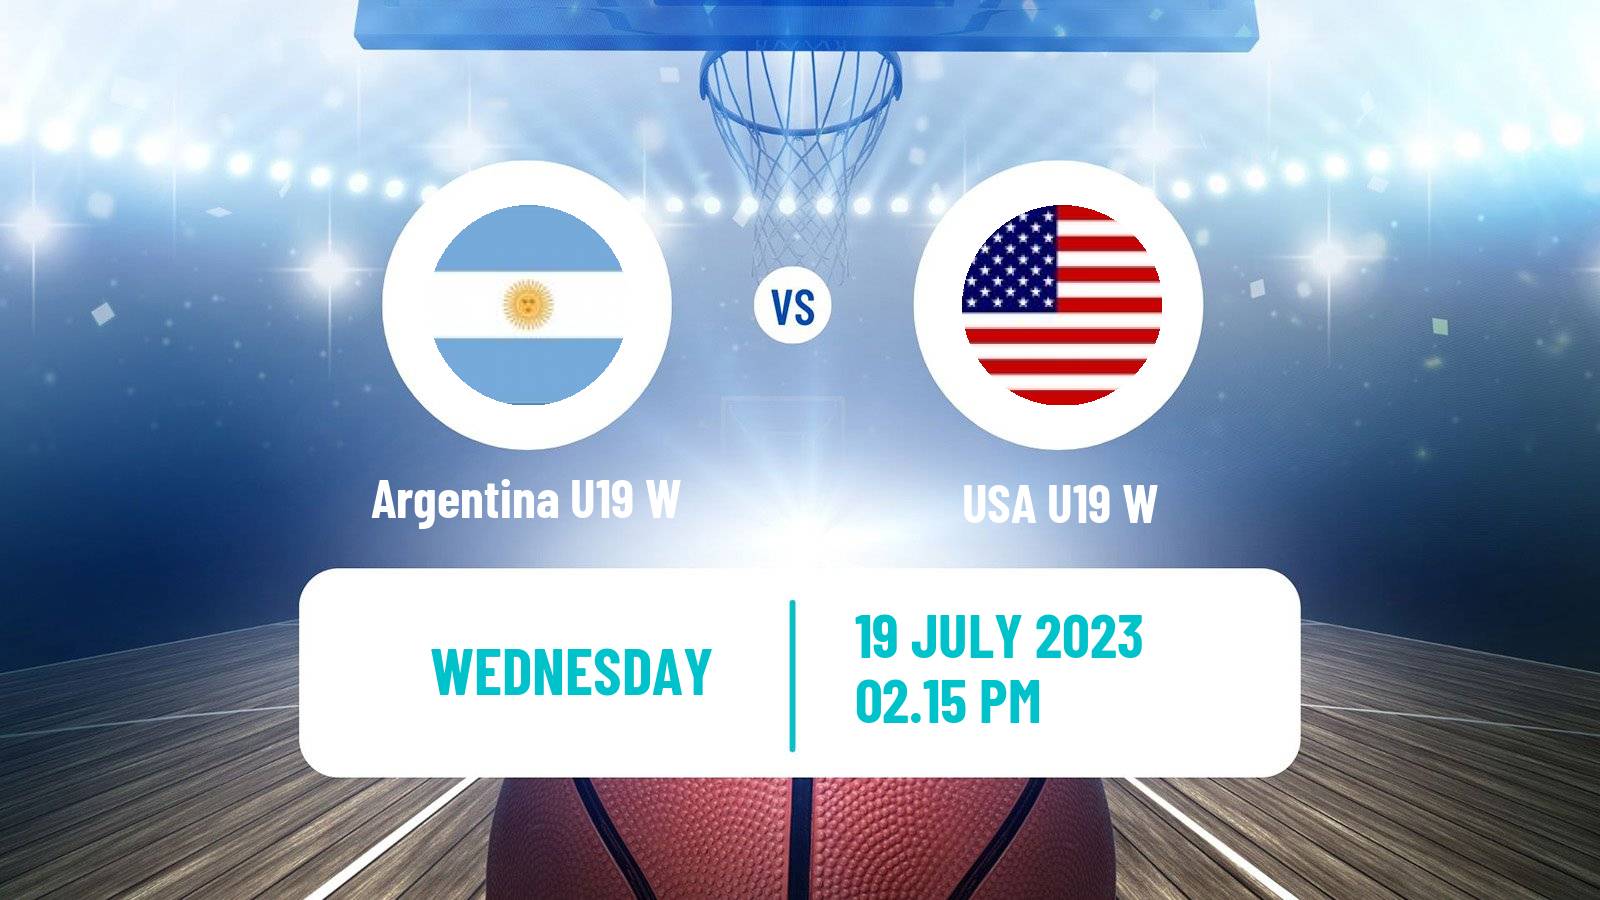 Basketball World Championship U19 Basketball Women Argentina U19 W - USA U19 W